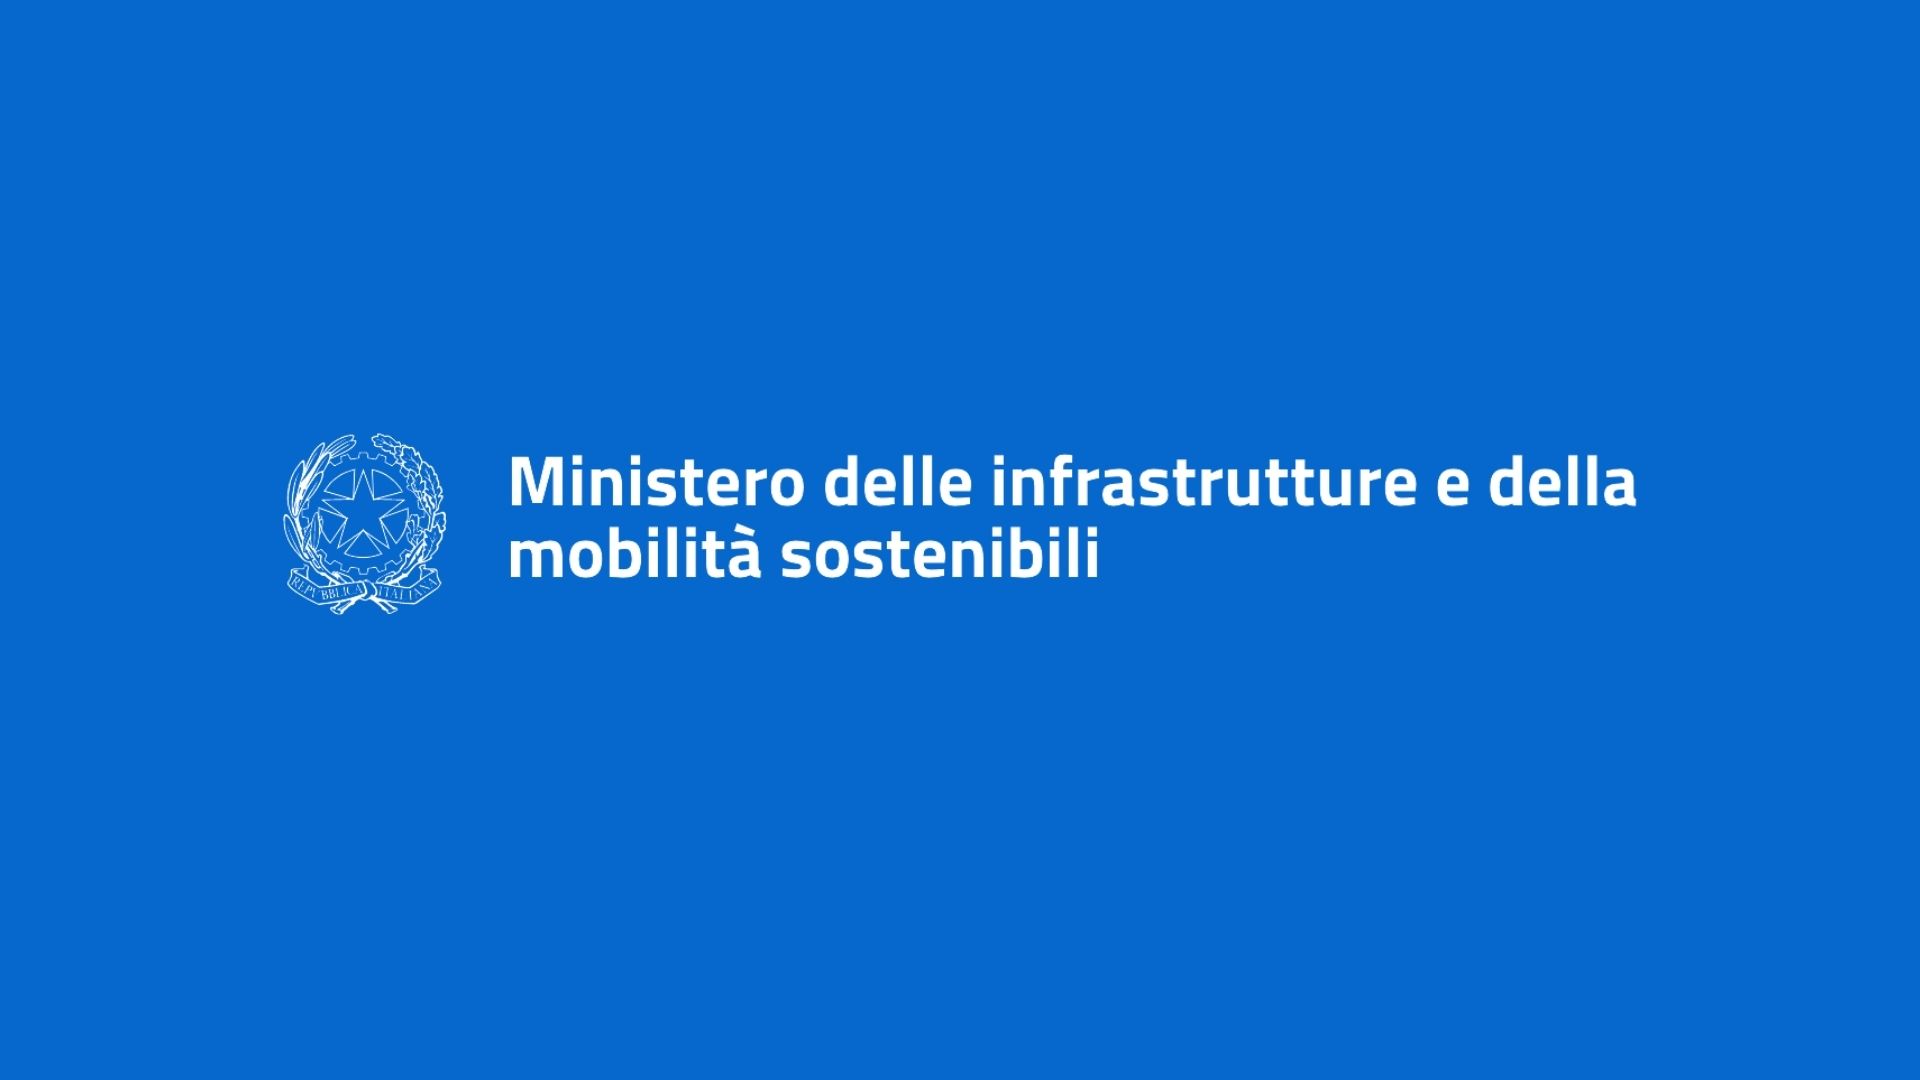 Ministero delle infrastrutture e della mobilita sostenibili v2